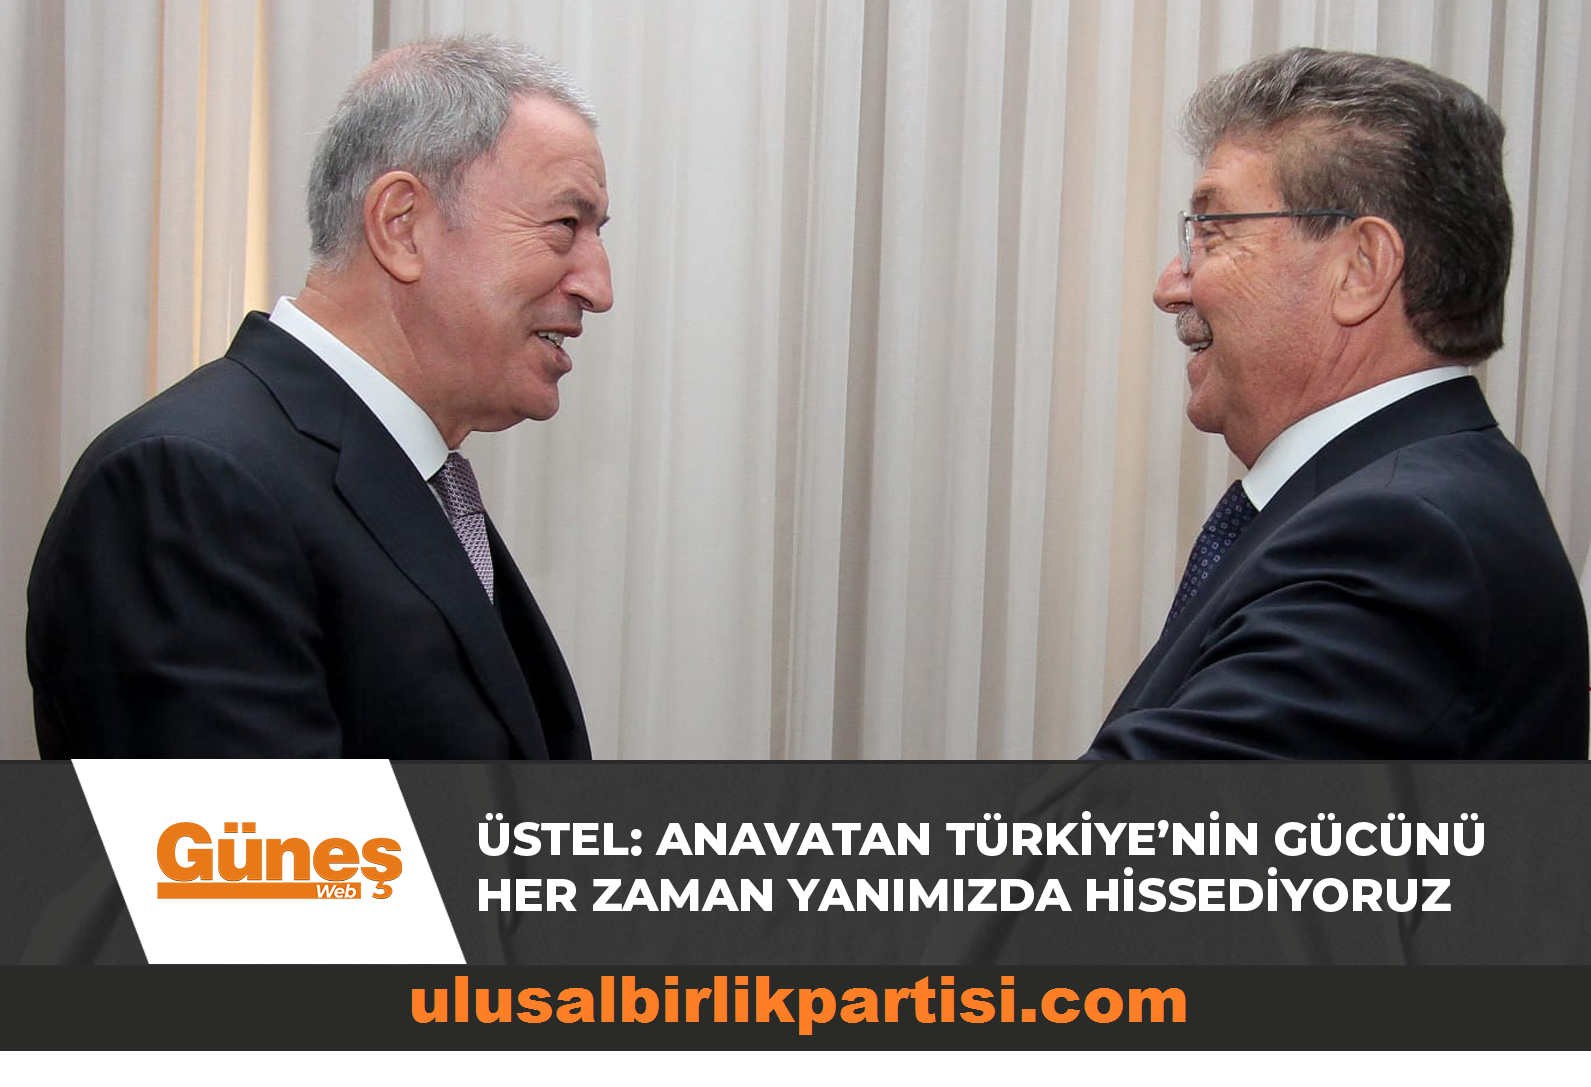 Read more about the article Başbakan Üstel: Anavatan Türkiye’nin gücünü her zaman yanımızda hissediyoruz